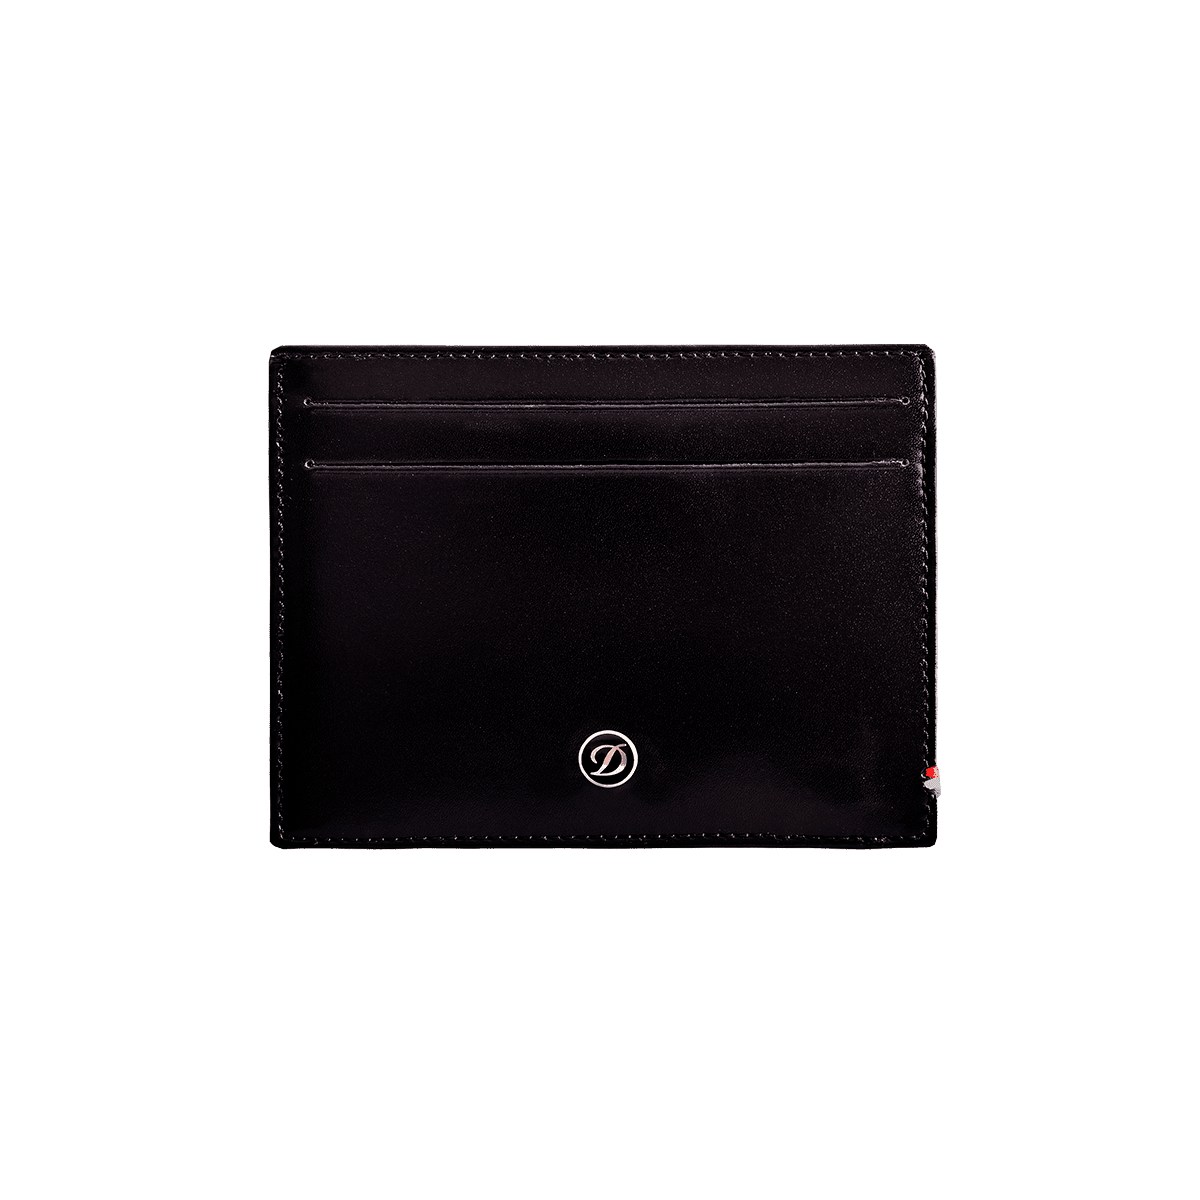 Чехол для кредитных карт Line D 180011 Цвет Чёрный Гладкая кожа, шесть отделений для кредитных карт | S.T. Dupont